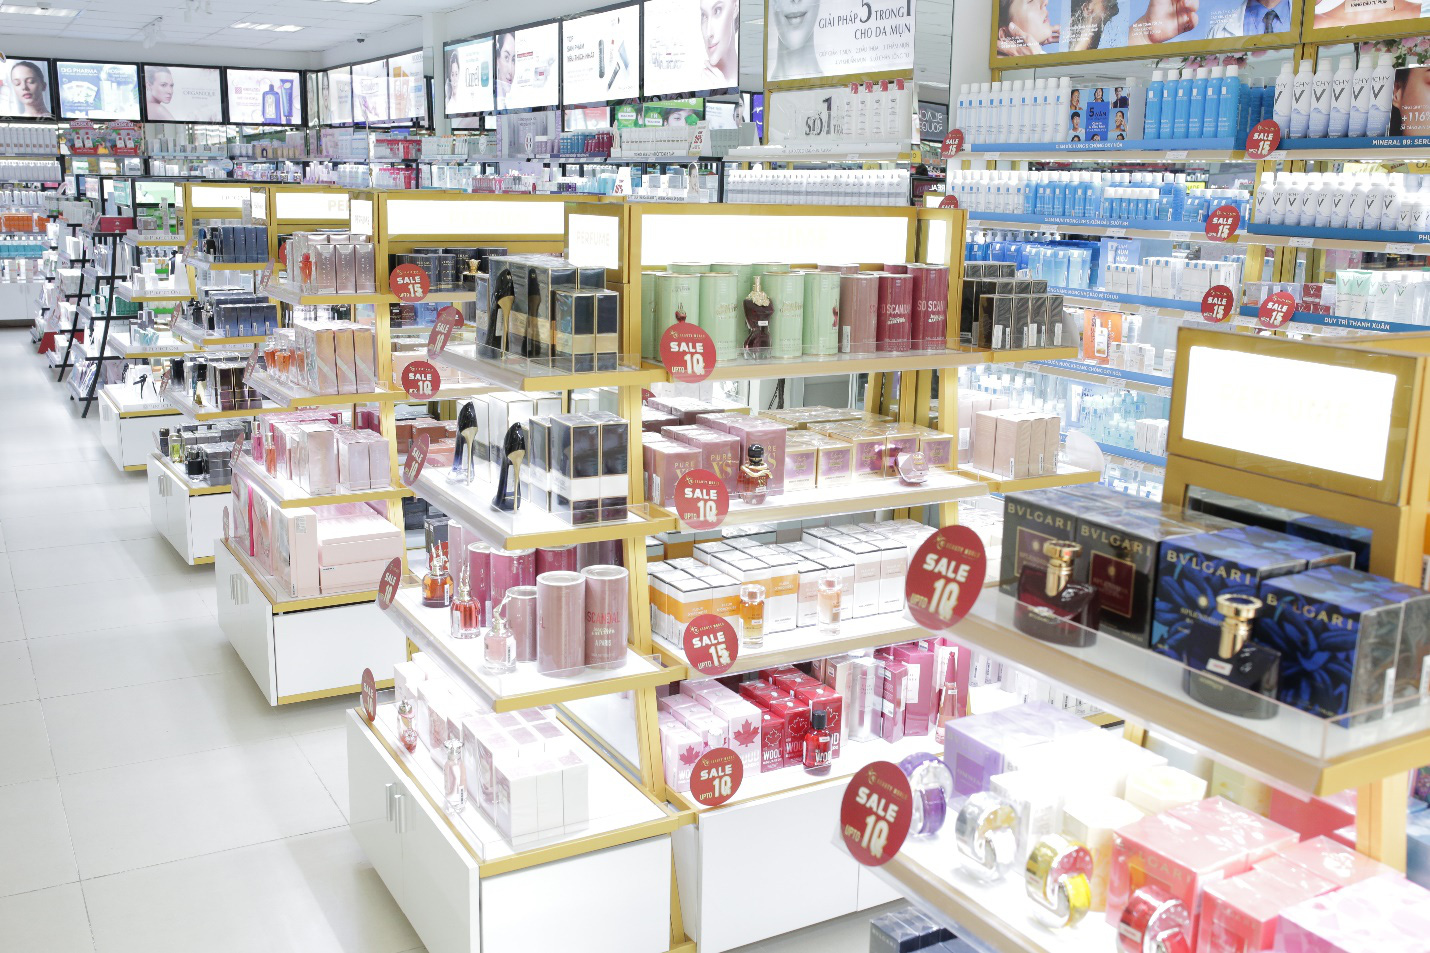 3.000 mỹ phẩm chính hãng giảm 50% giá nhân khai trương siêu thị AB Beauty World 3 - Ảnh 3.